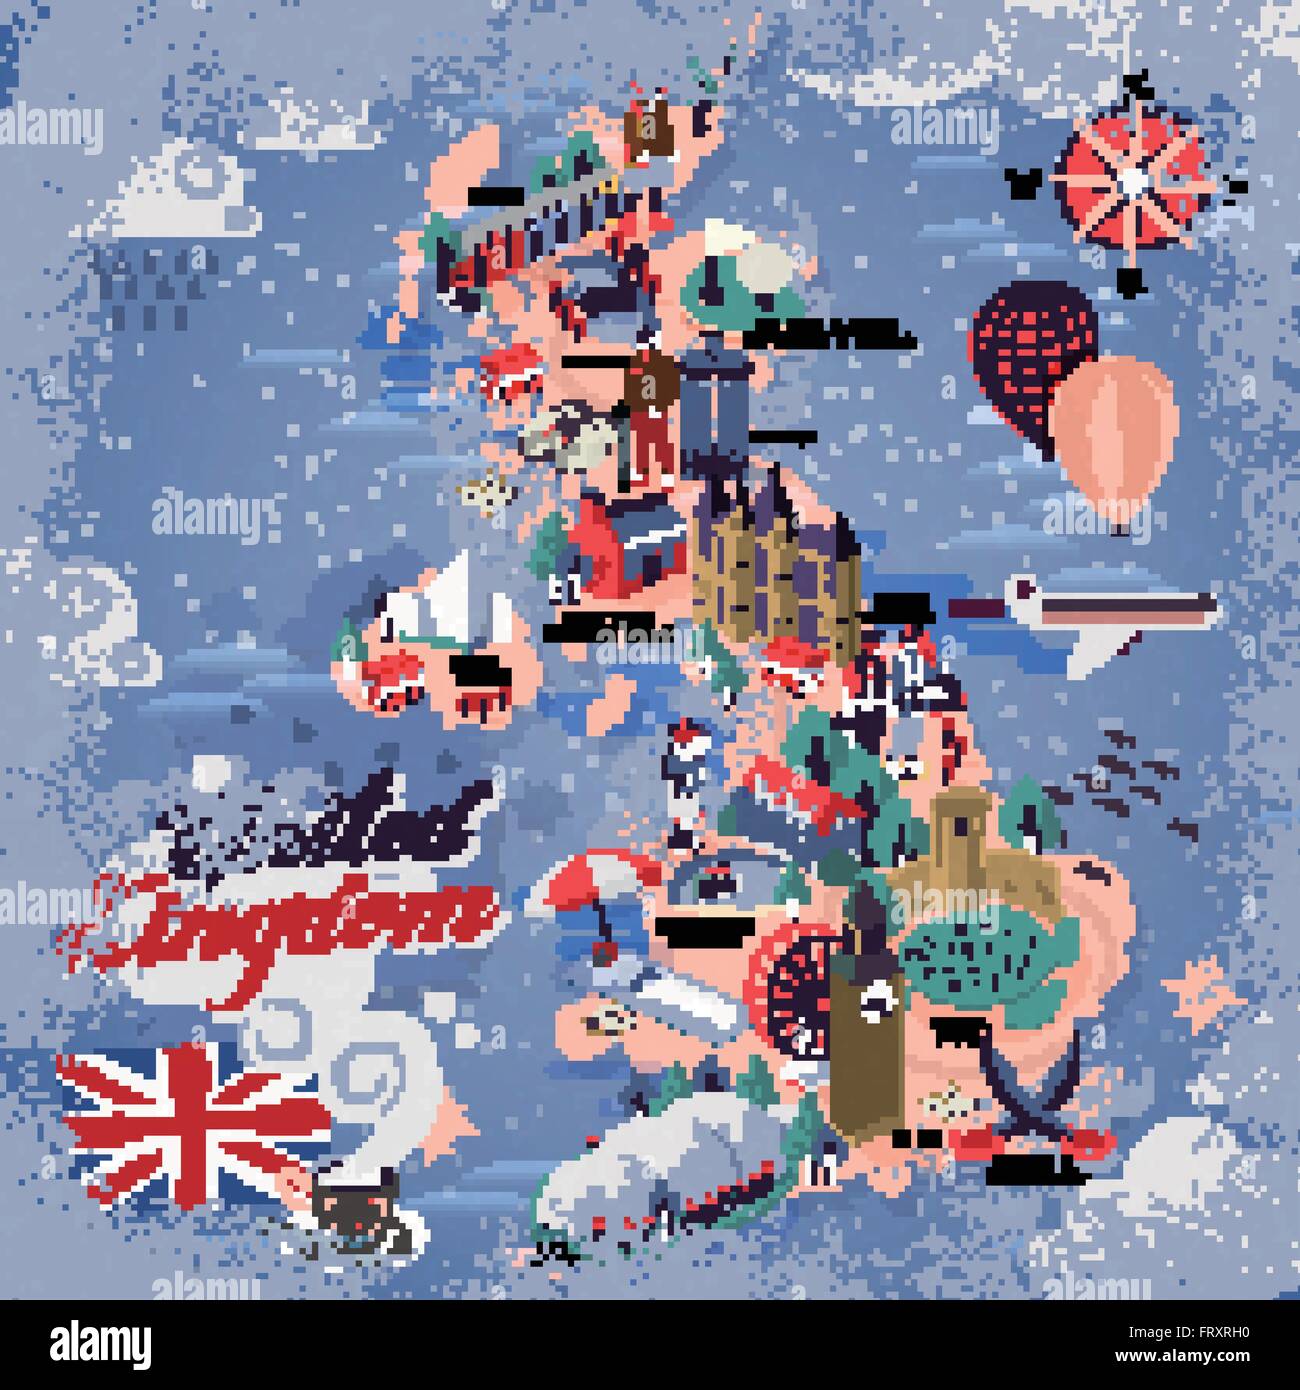 La carte de voyage Royaume-uni attrayants avec des attractions Illustration de Vecteur